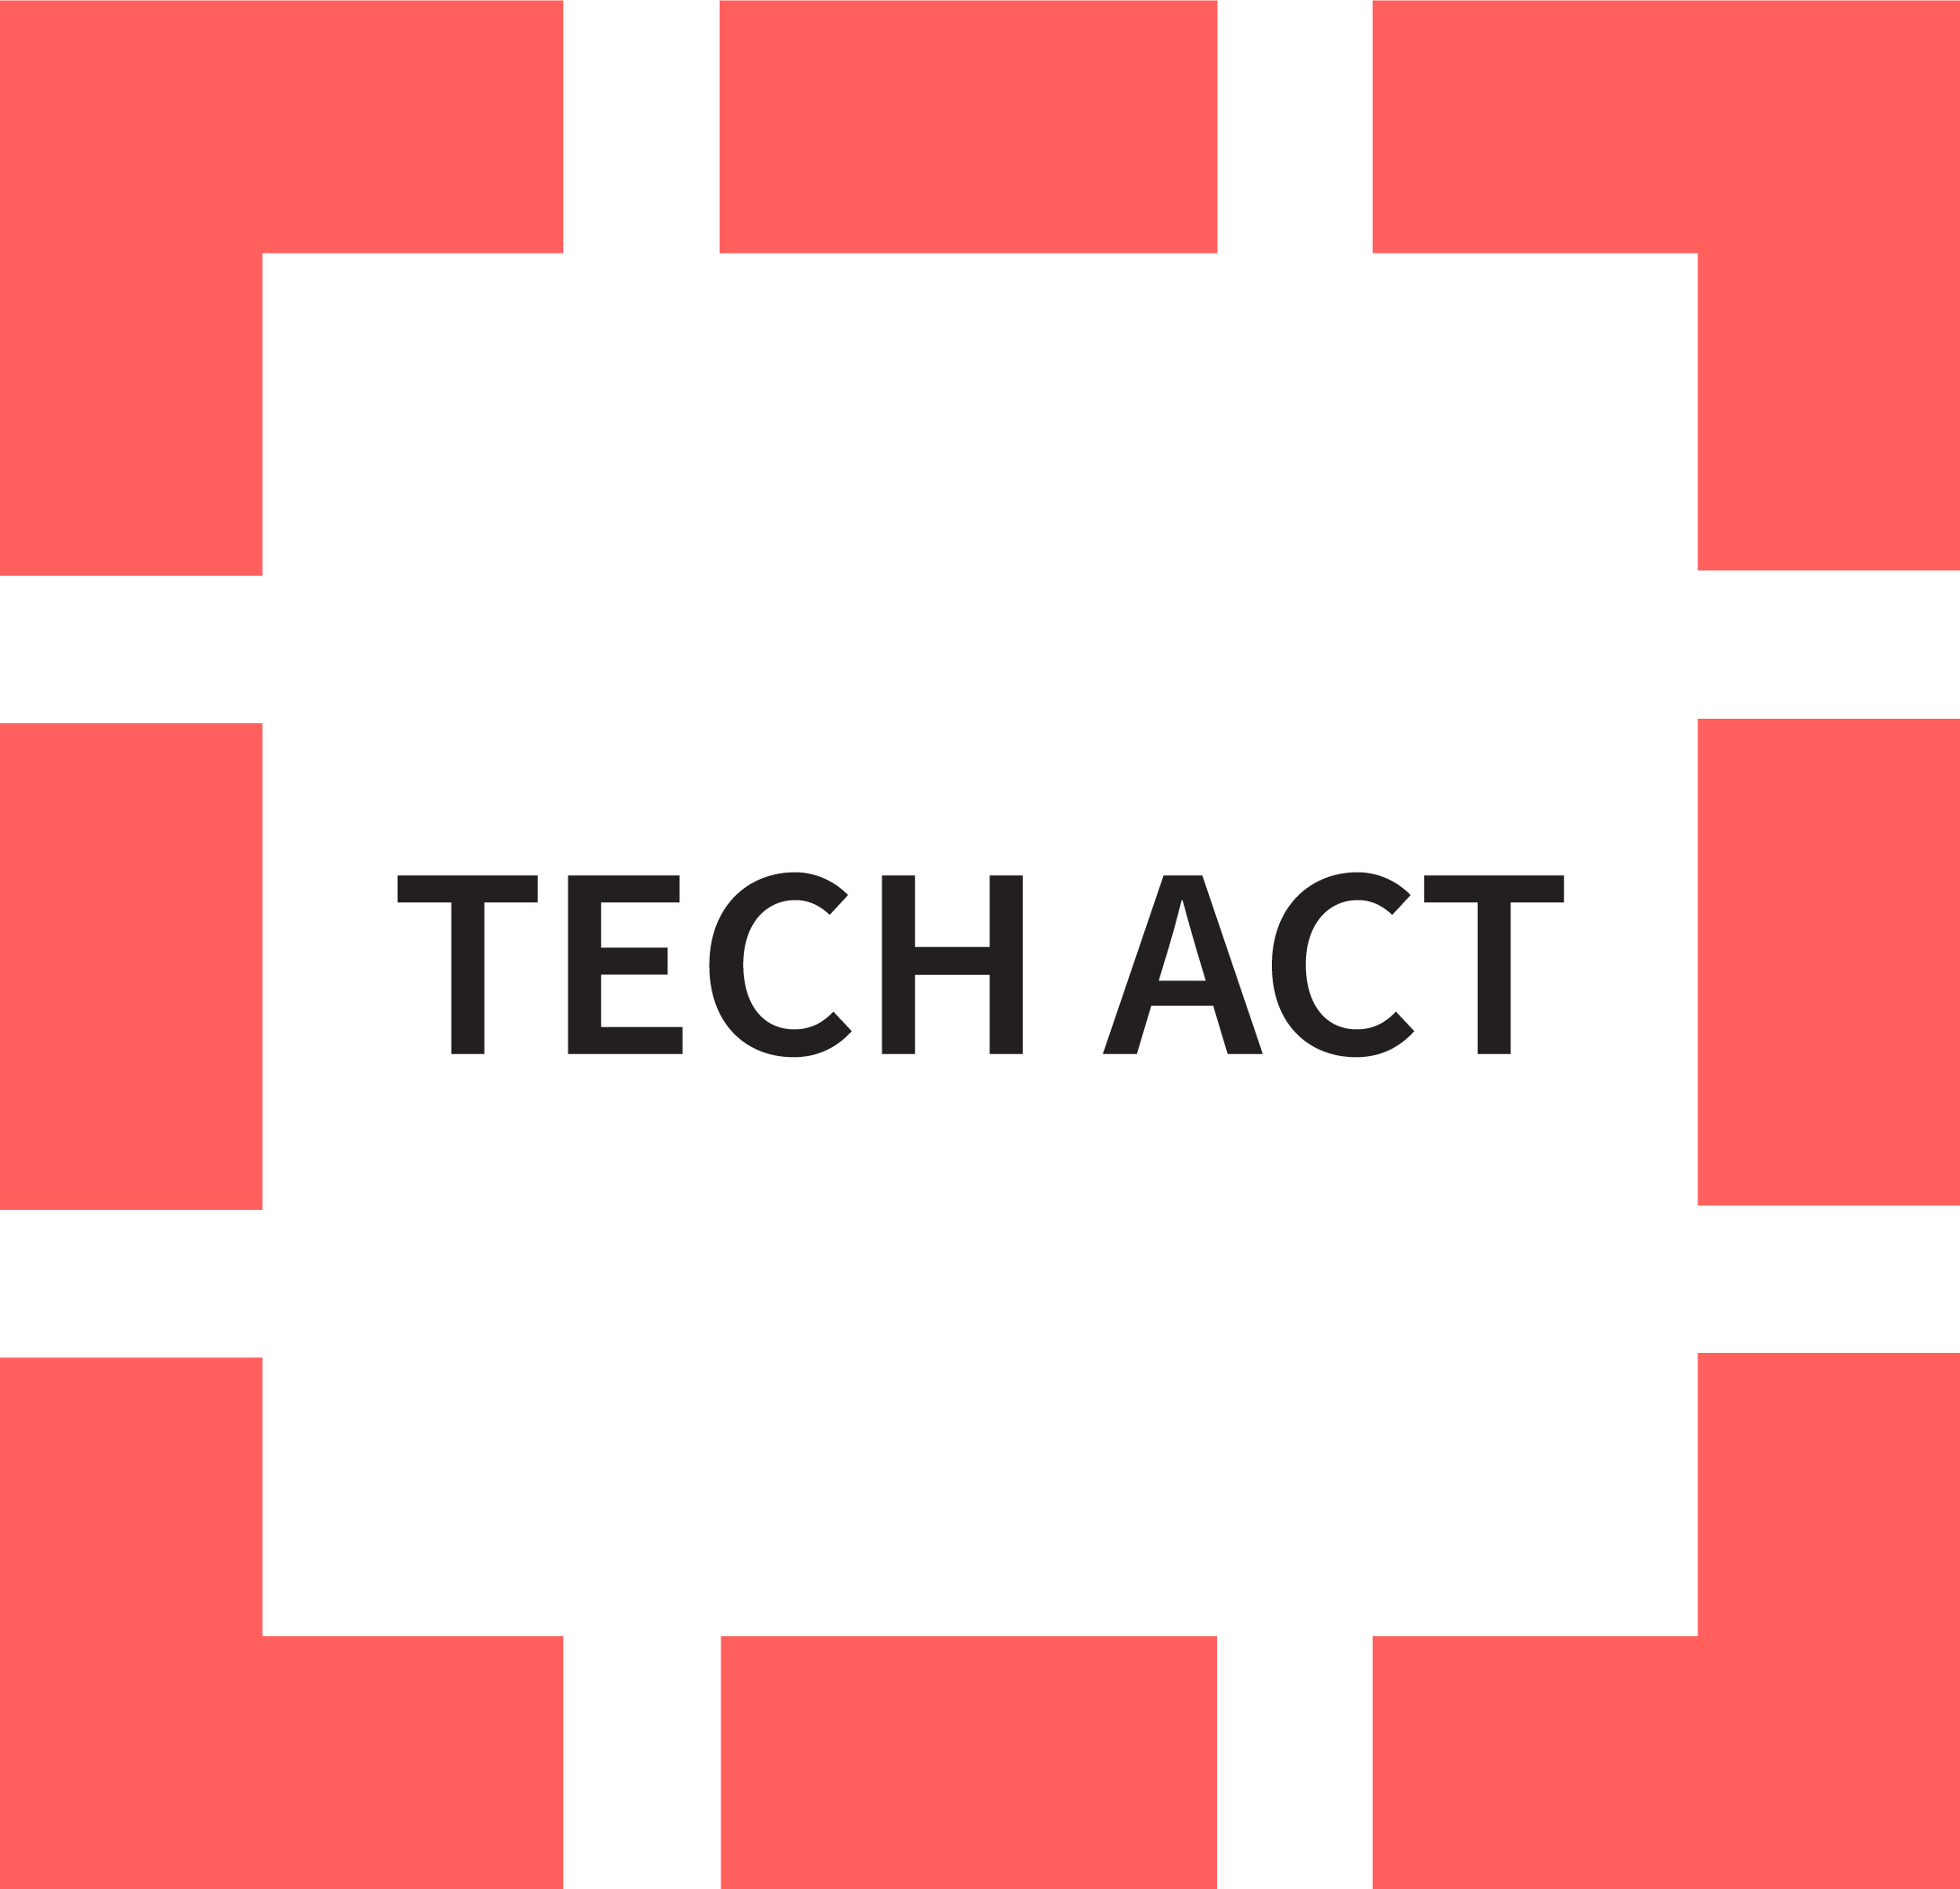 The Tech Act